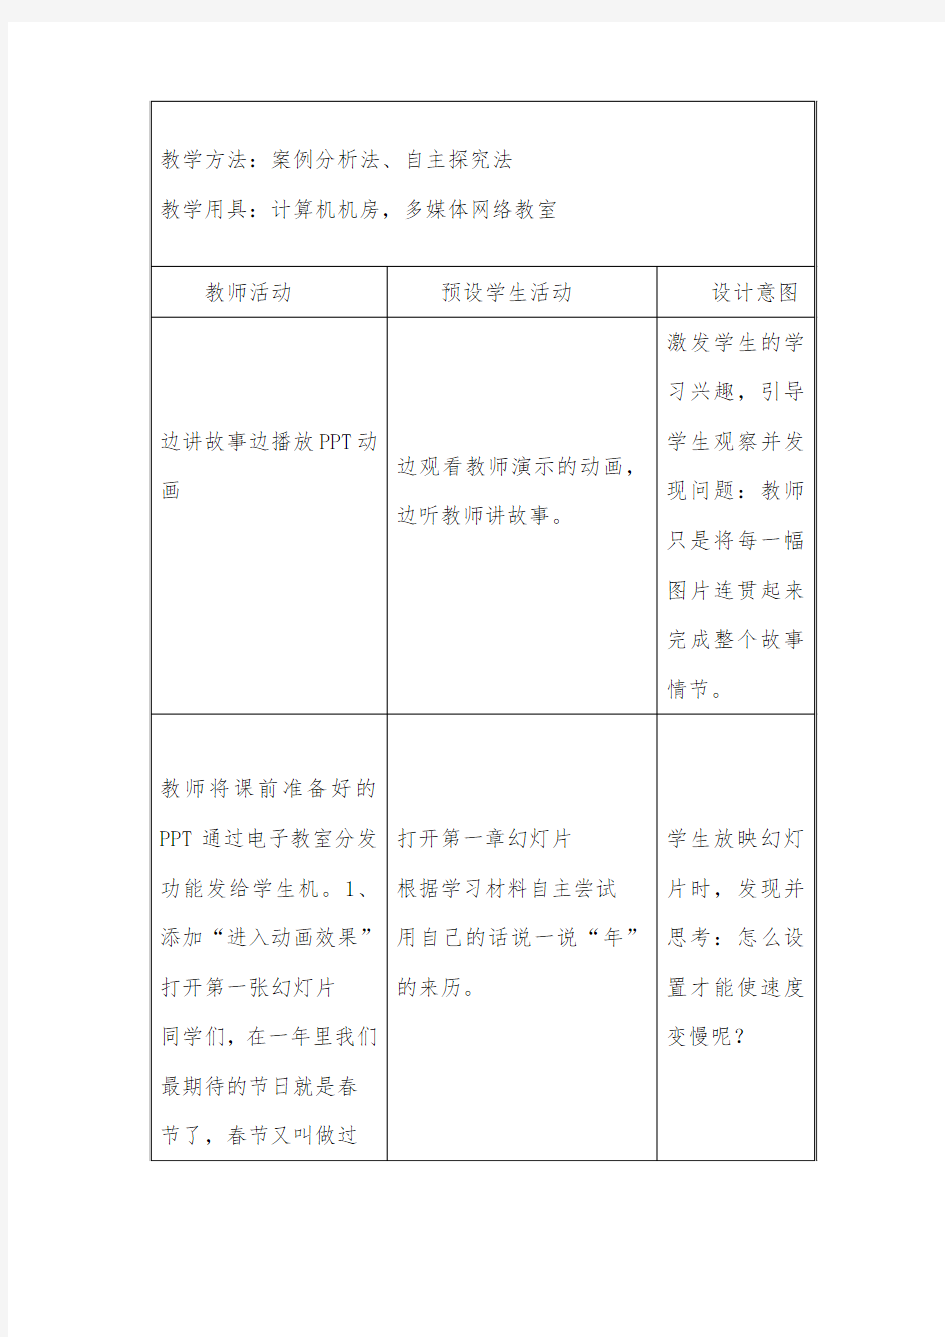 作业5学习用PPT制作——中国传统节日